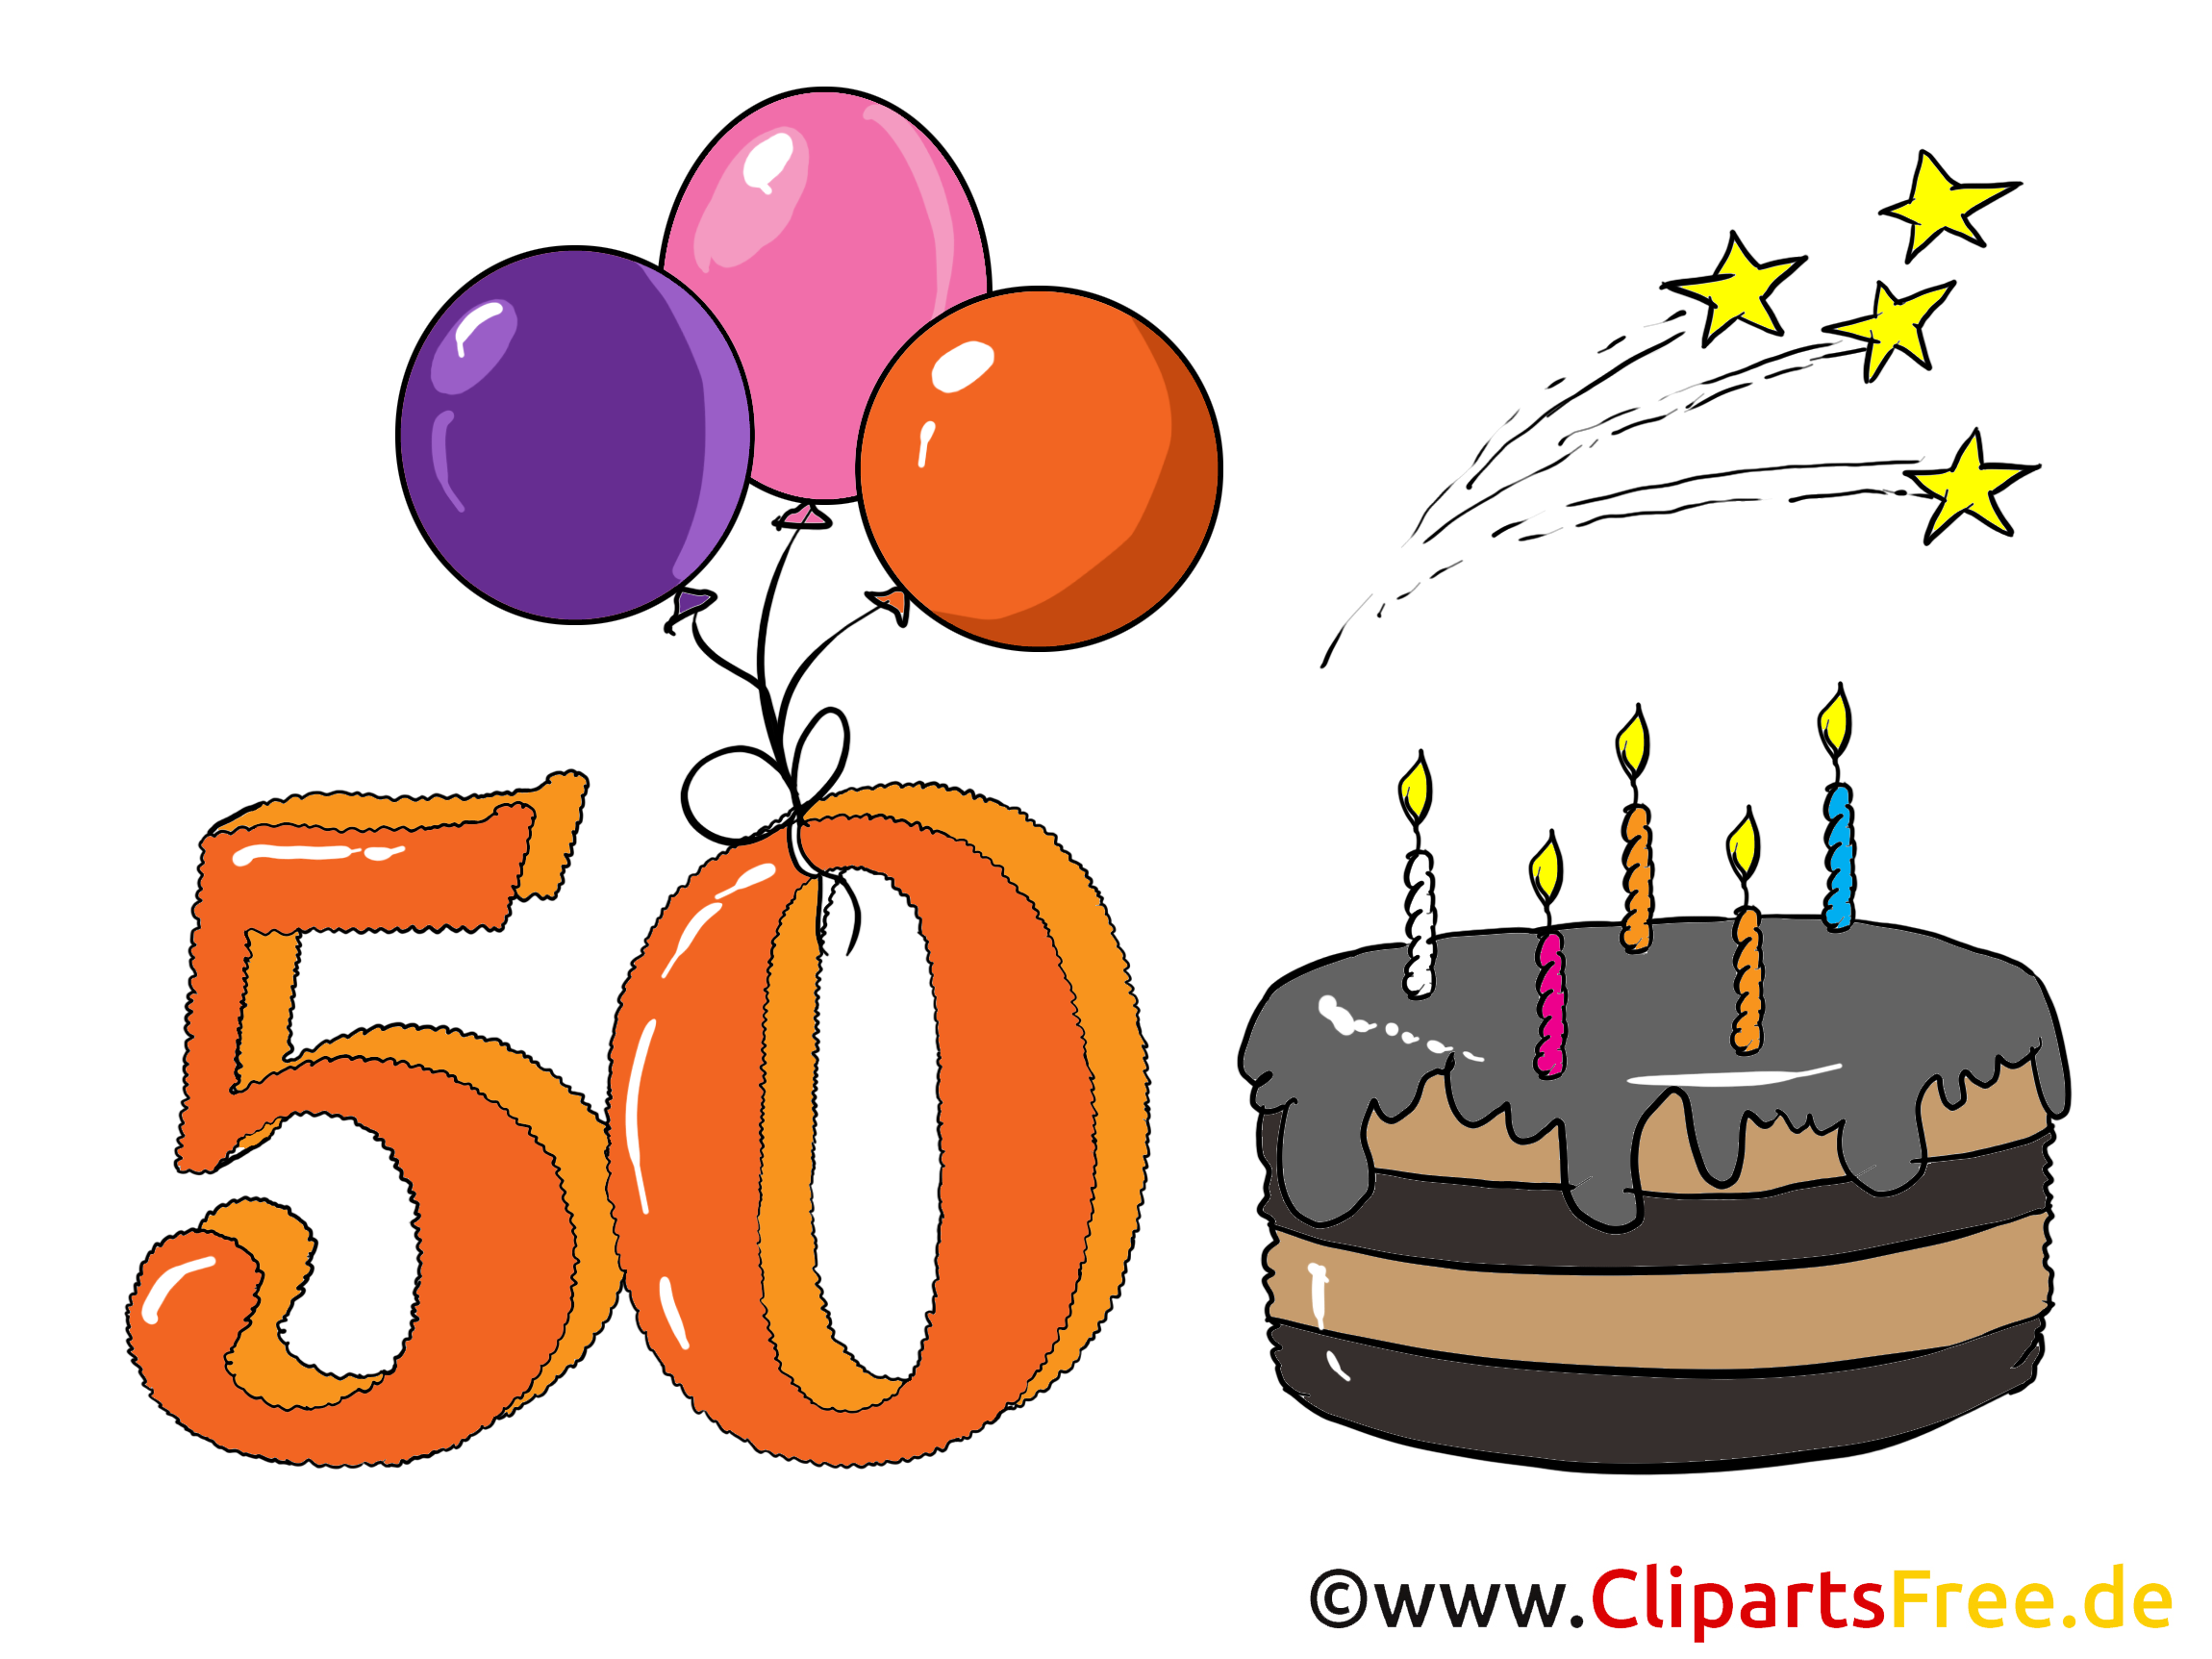 Gratulacje dla 50. Urodziny - kartka urodzinowa